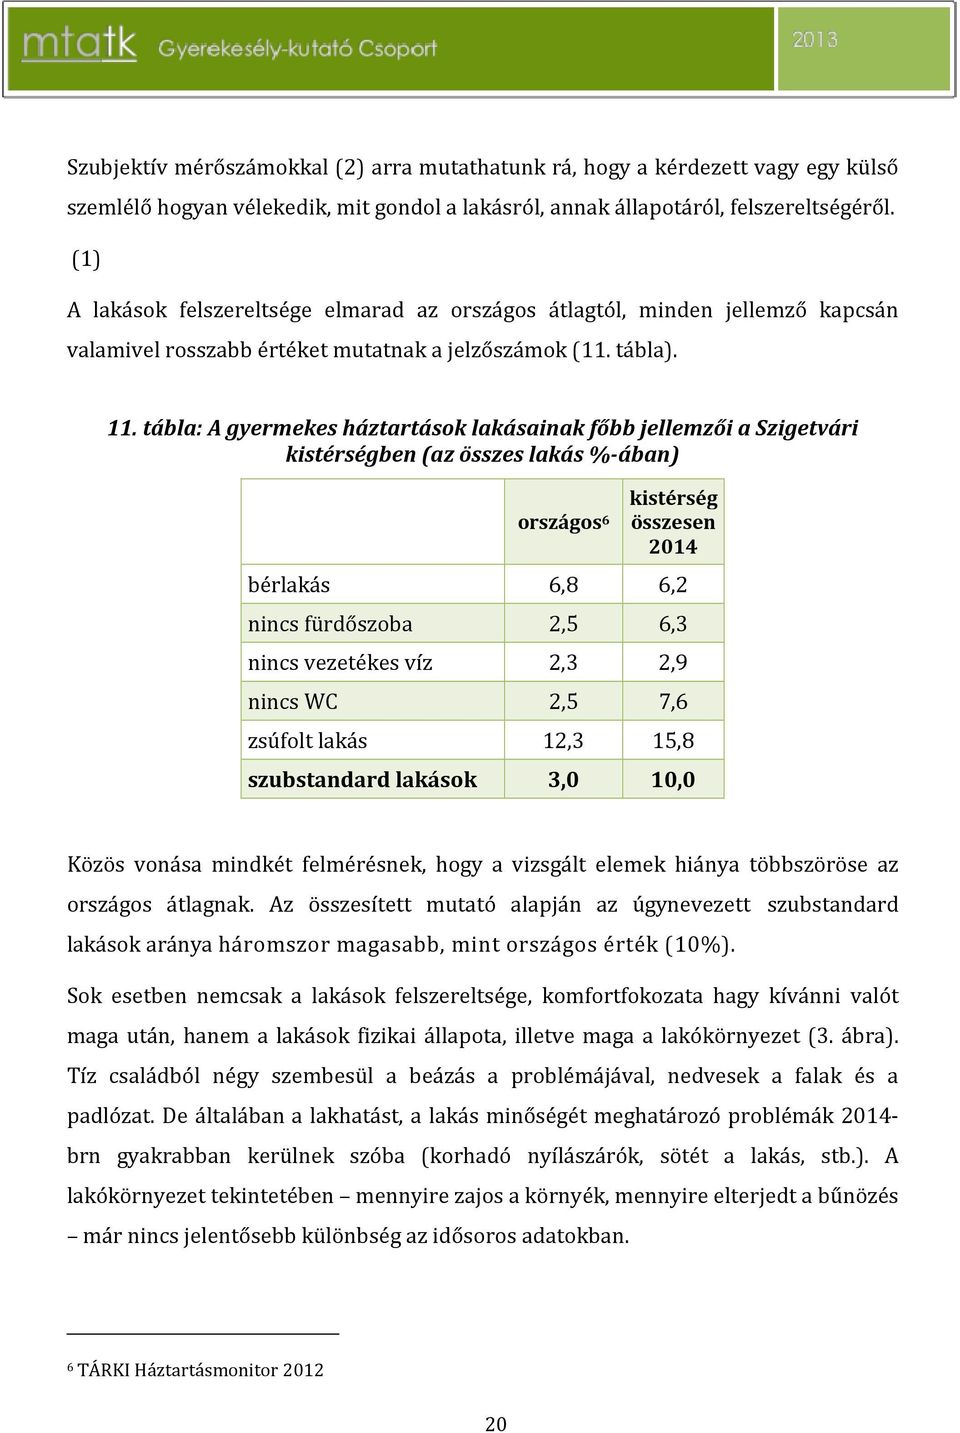 tábla: A gyermekes háztartások lakásainak főbb jellemzői a Szigetvári kistérségben (az összes lakás %-ában) országos 6 kistérség összesen 2014 bérlakás 6,8 6,2 nincs fürdőszoba 2,5 6,3 nincs